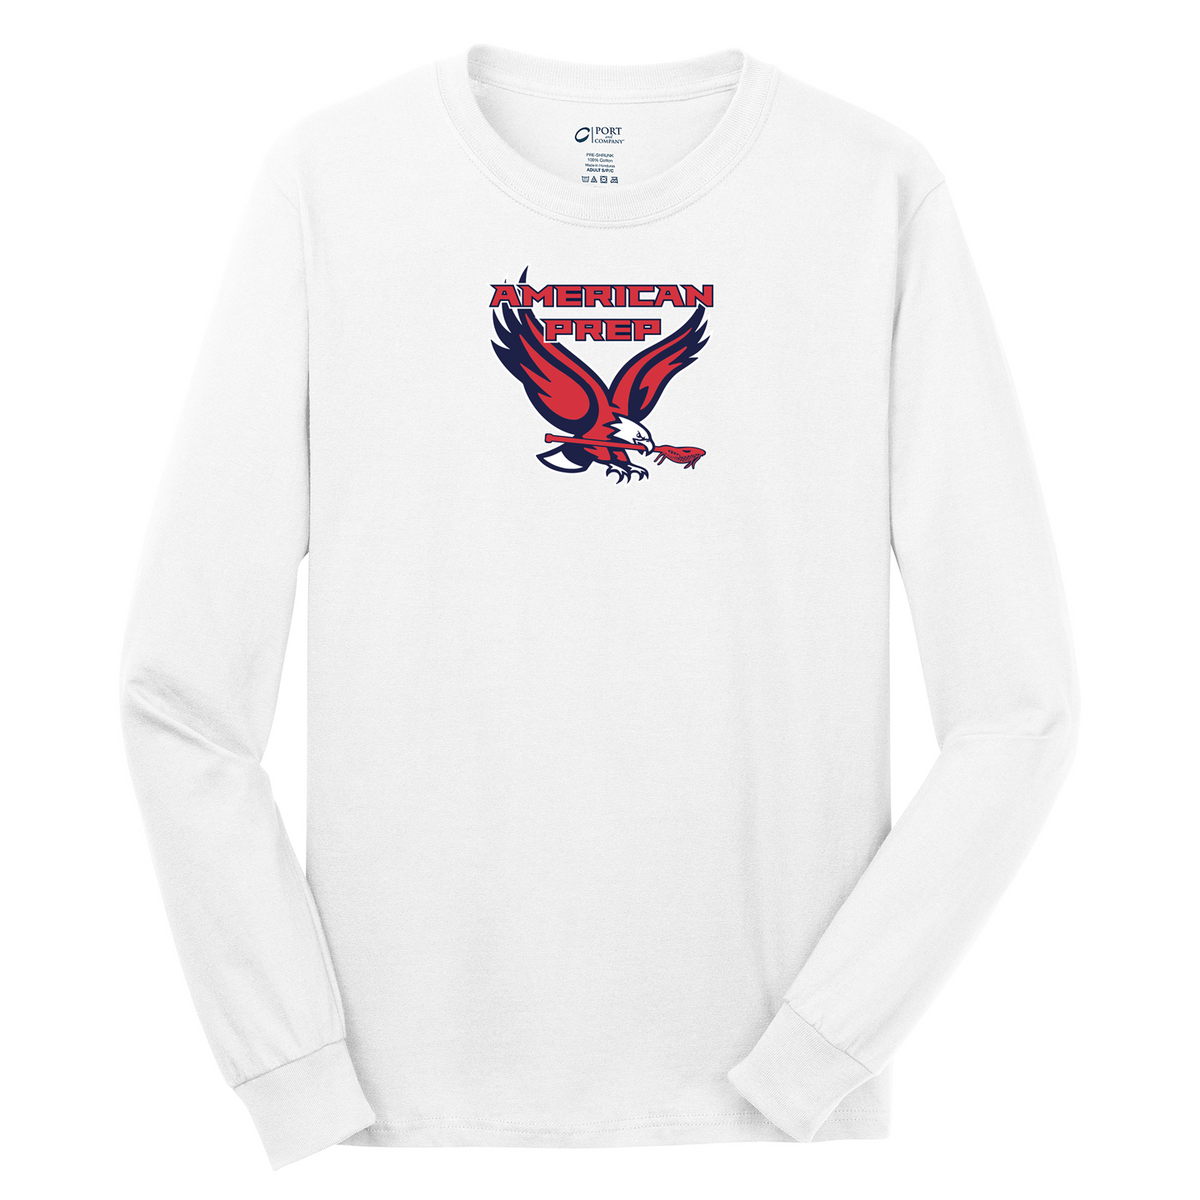 APA Lacrosse Cotton Long Sleeve Shirt